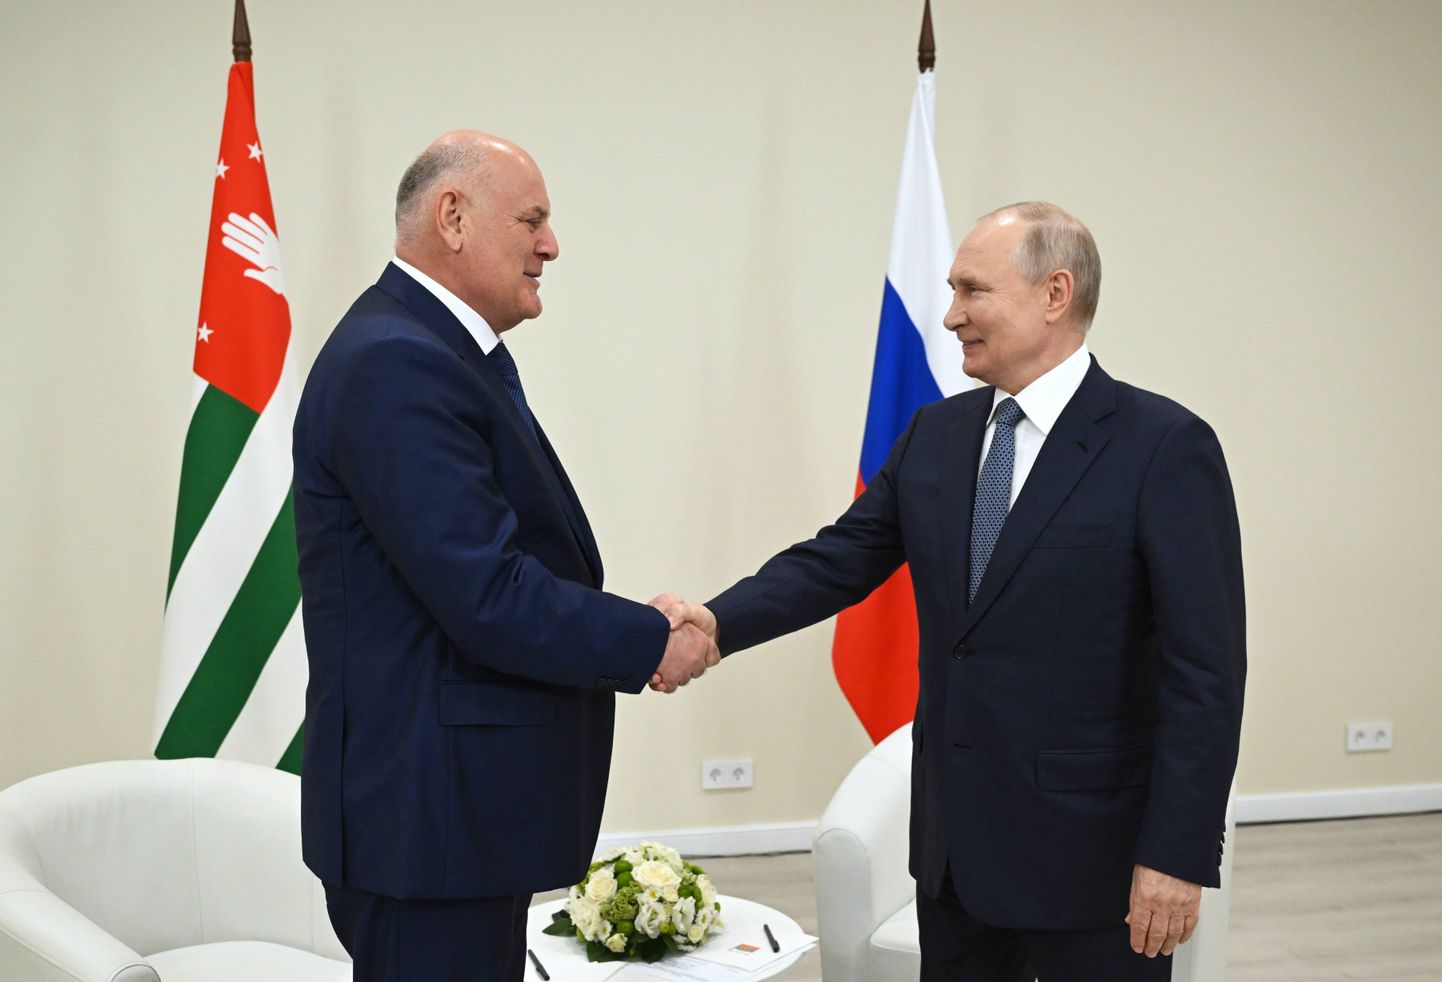 Tunnustamata Abhaasia vabariigi juht Aslan Bzhania ja Venemaa president Vladimir Putin kohtusid eile Sotšis.